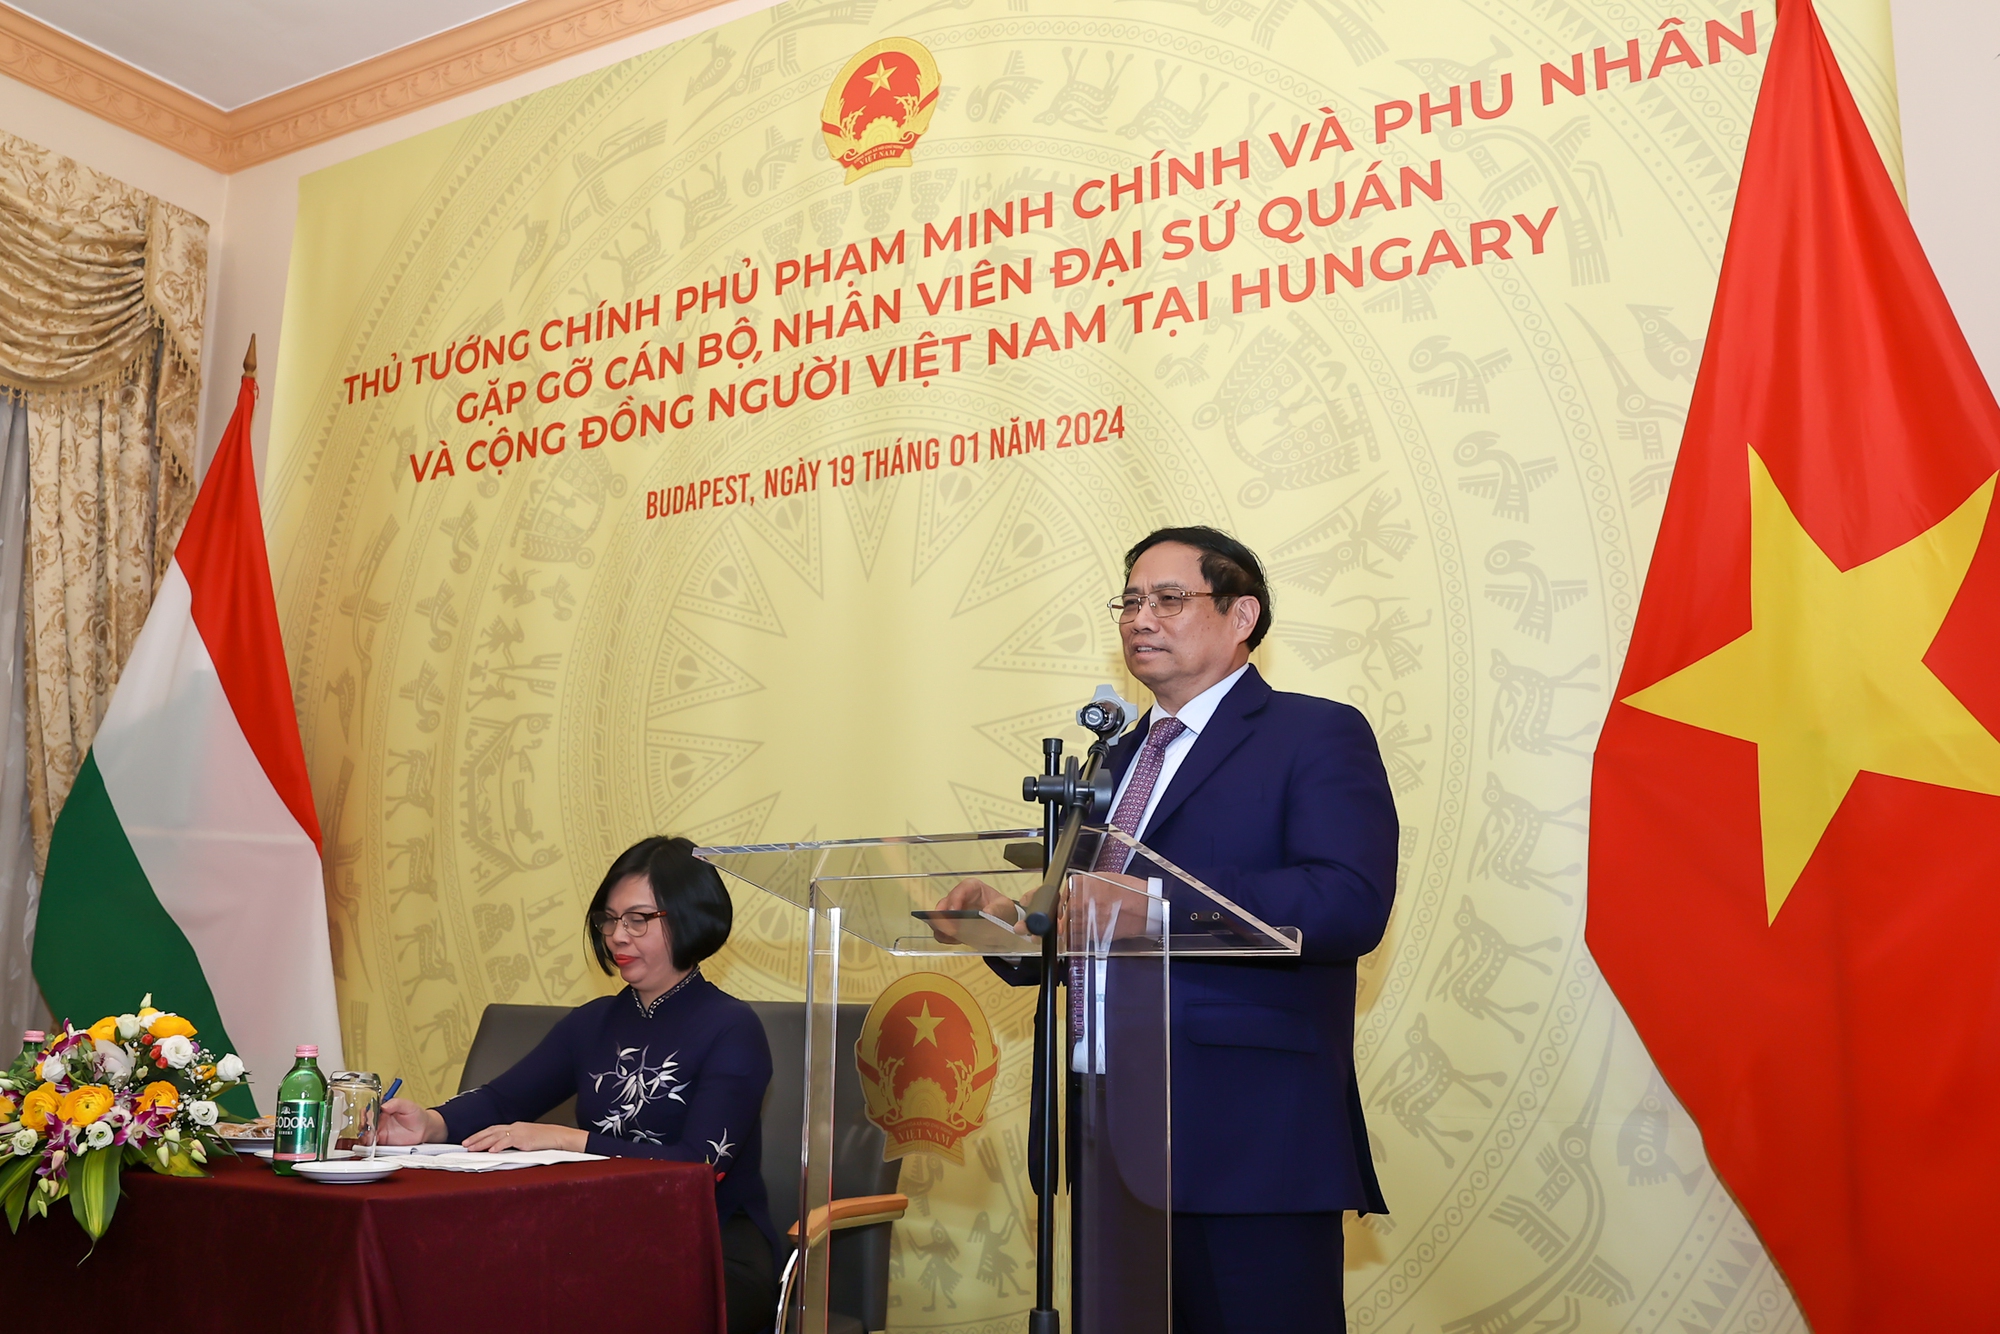 Thủ tướng biểu dương, đánh giá cao và chúc mừng cộng đồng người Việt Nam tại Hungary đã đoàn kết, không ngừng lớn mạnh, trưởng thành, có nhiều đóng góp cho nước sở tại - Ảnh: VGP/Nhật Bắc